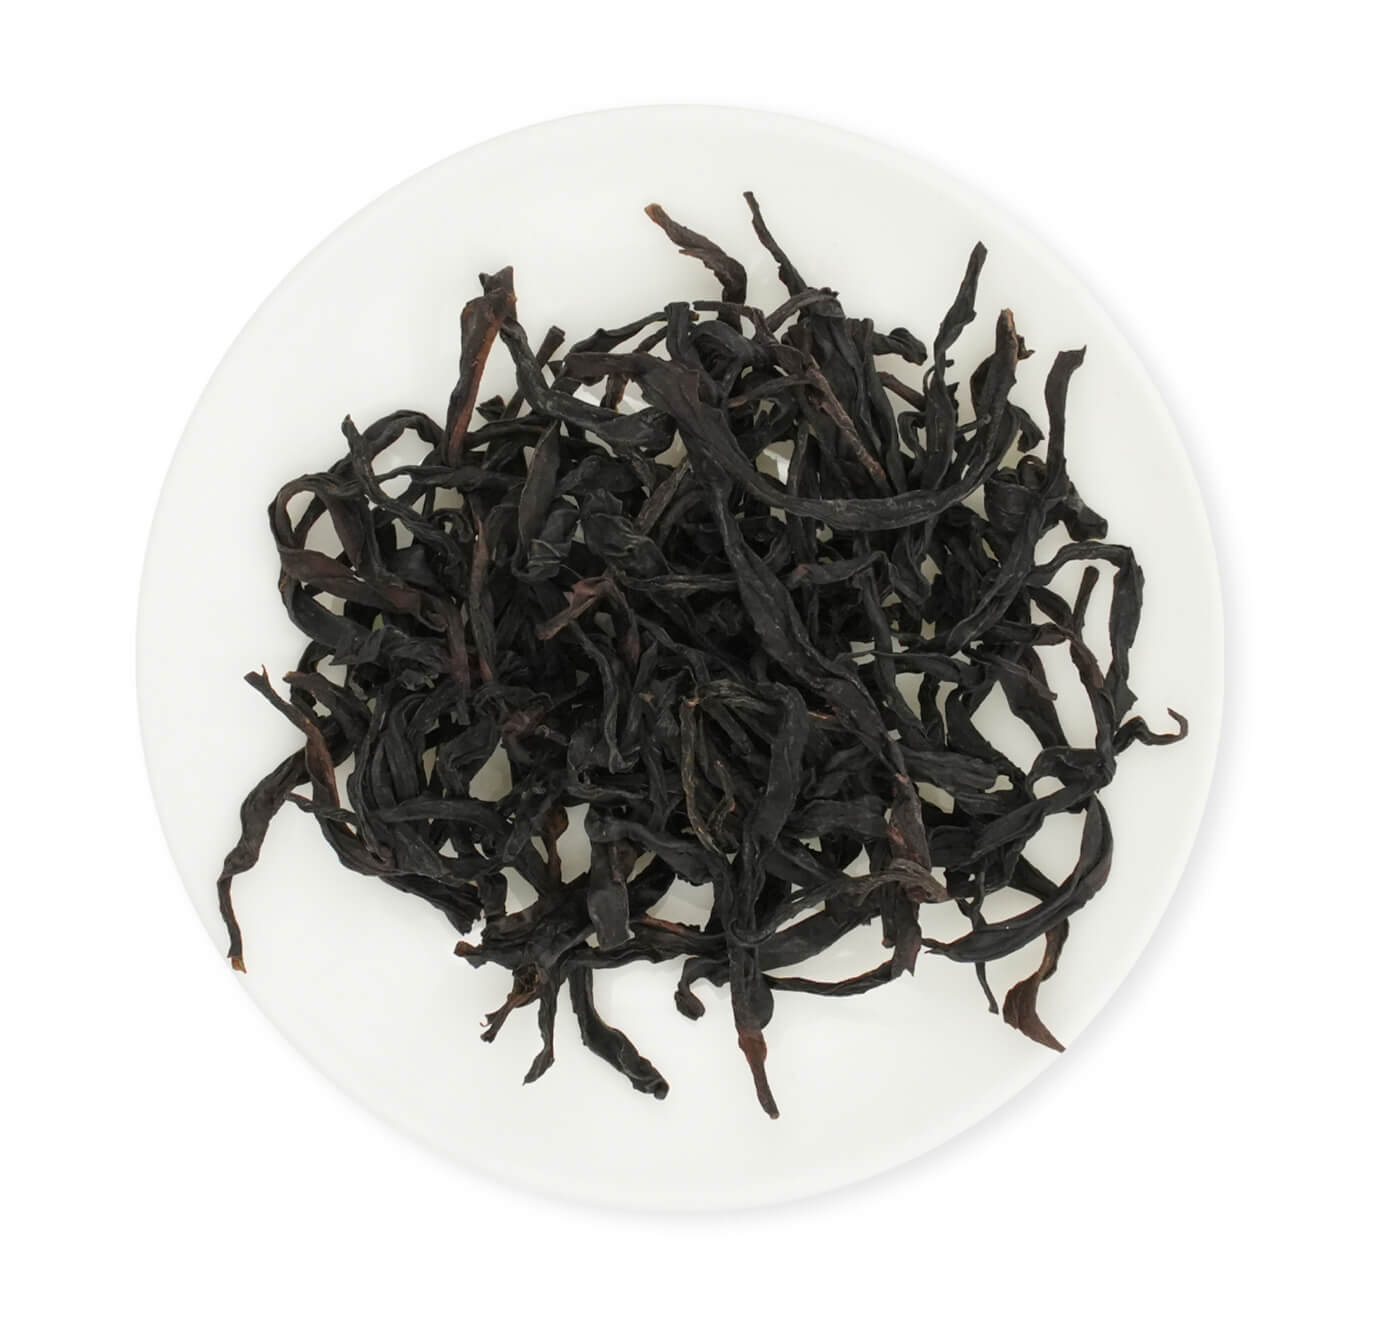 Fenghuang-Dancong-Tea-The-most-aromatic-oolong-tea